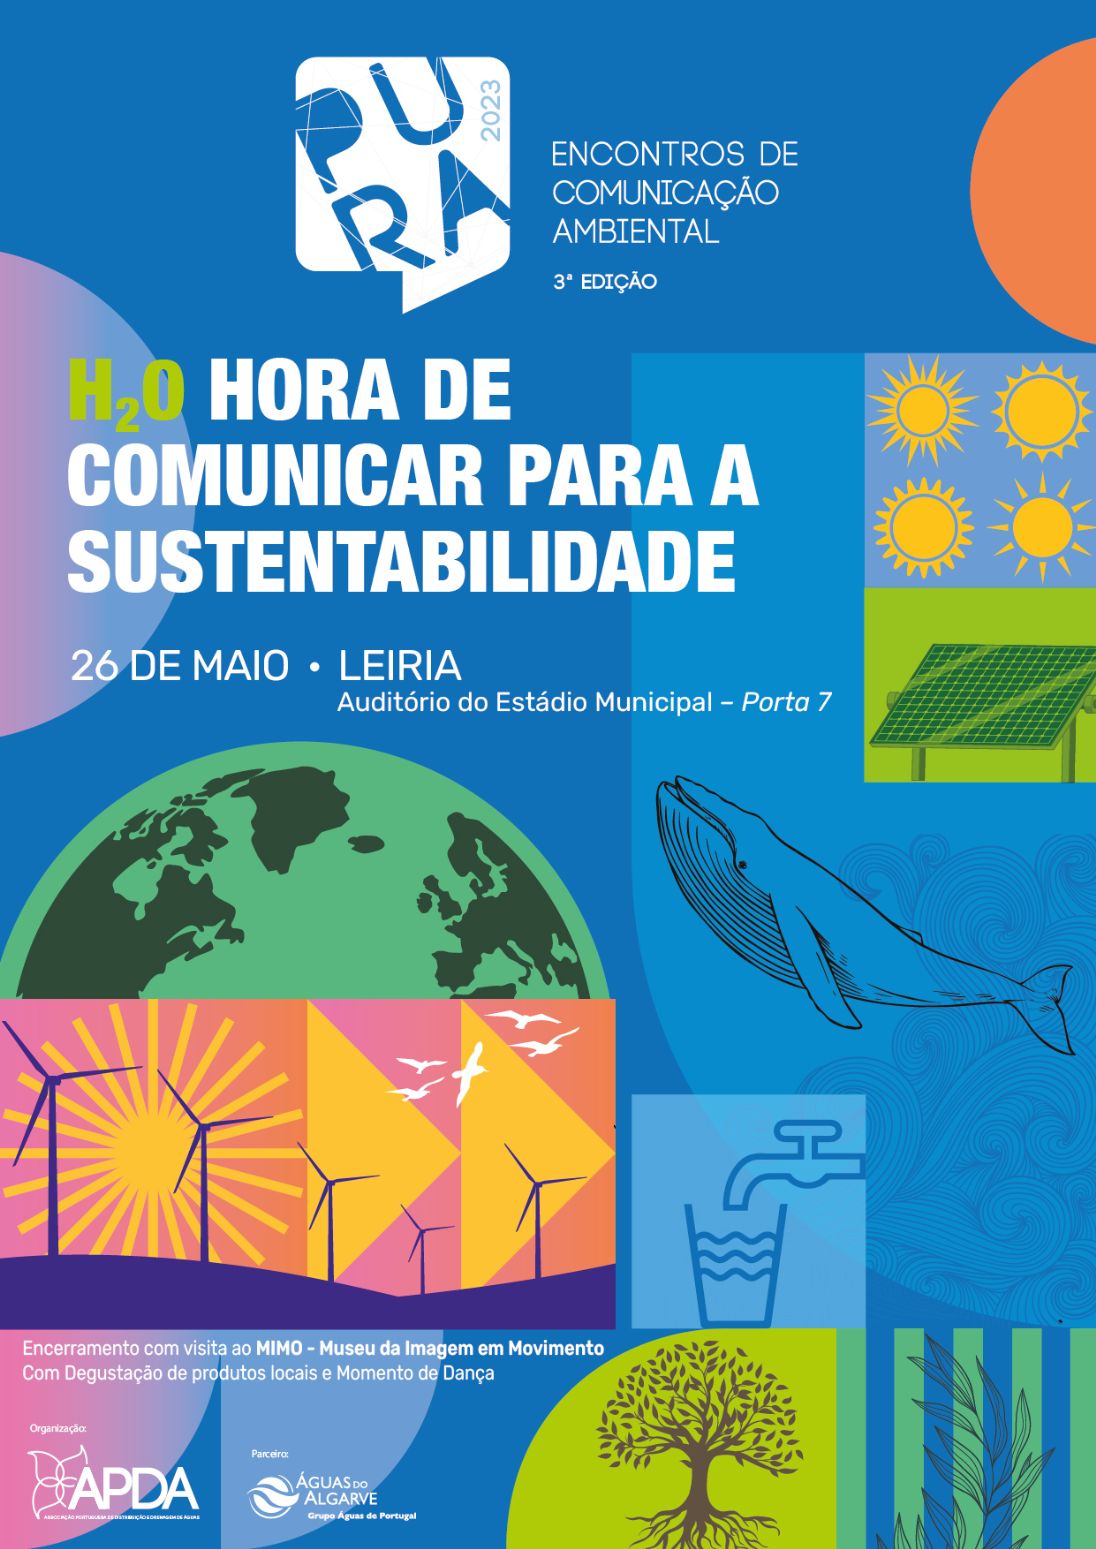 Hora de comunicar para a sustentabilidade é em Leiria a 26 de Maio